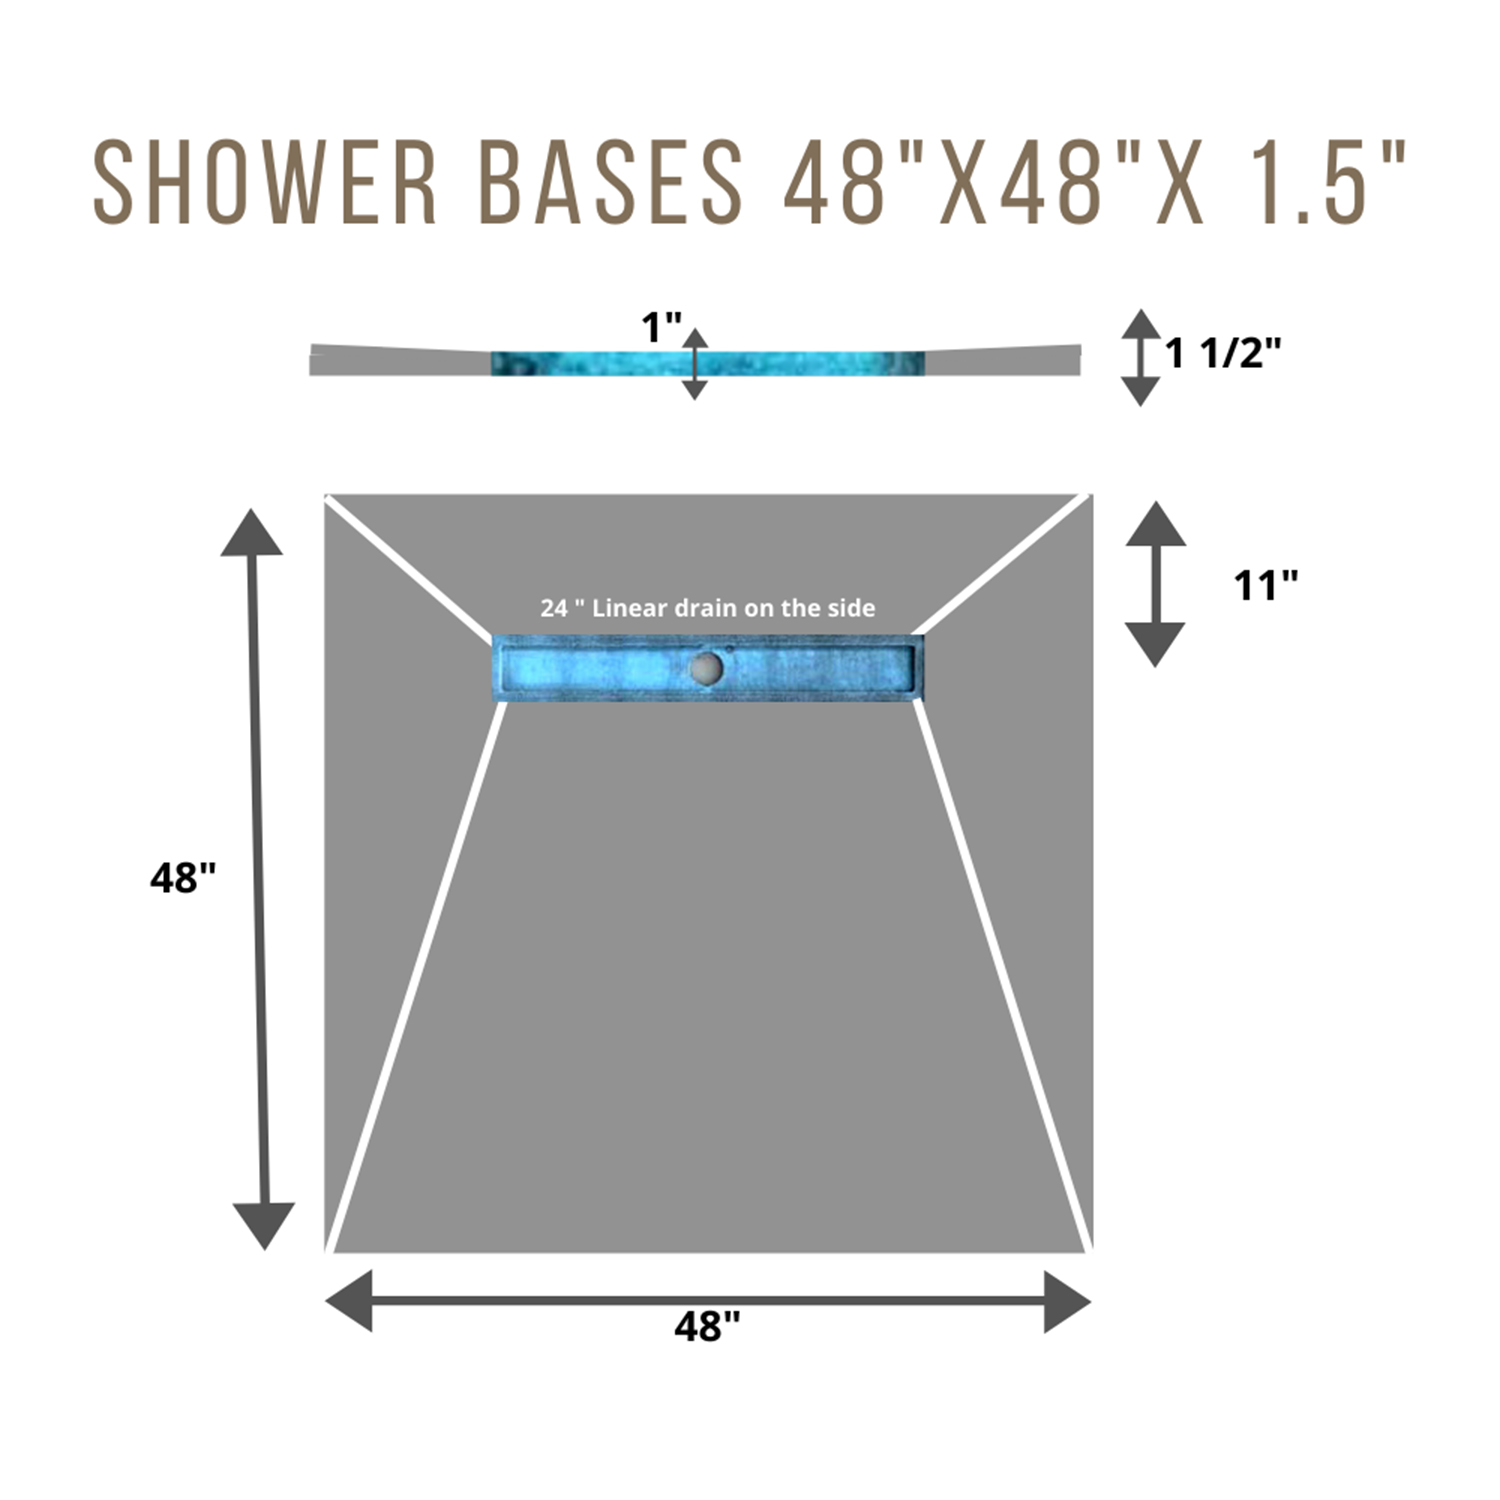 Shower Base 4x4 SIDE 24